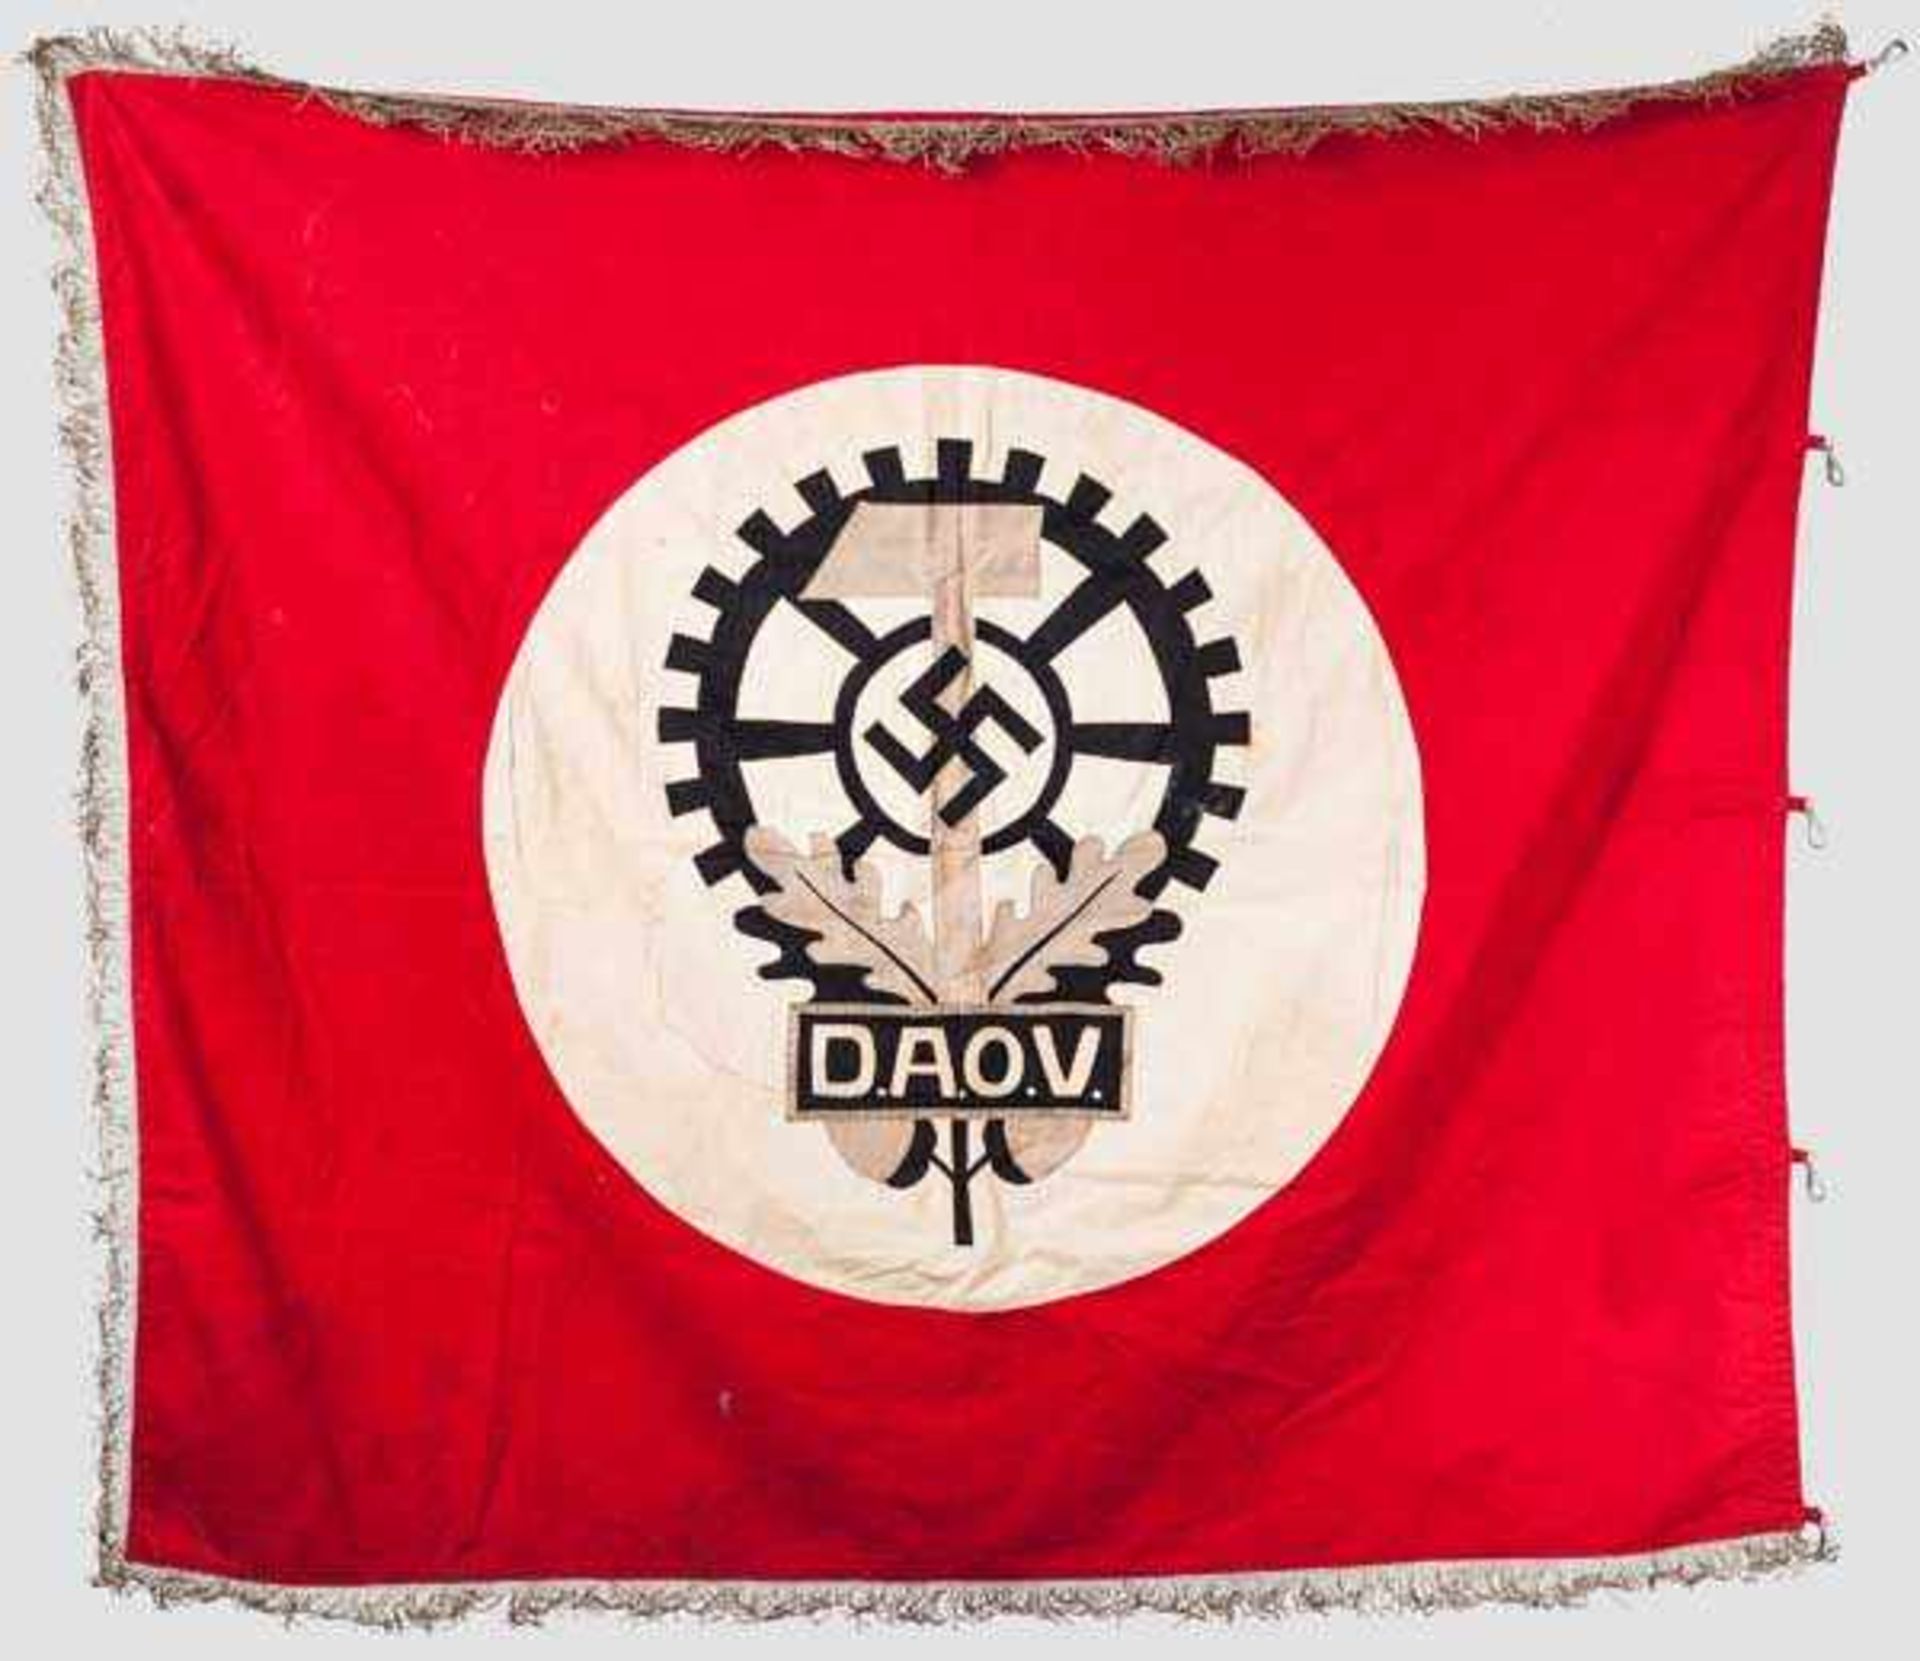 Fahne der Zahlstelle der Deutschen Arbeitsopfer-Versorgung (DAOV) in Werries Rotes Fahnenleinen - Bild 2 aus 2